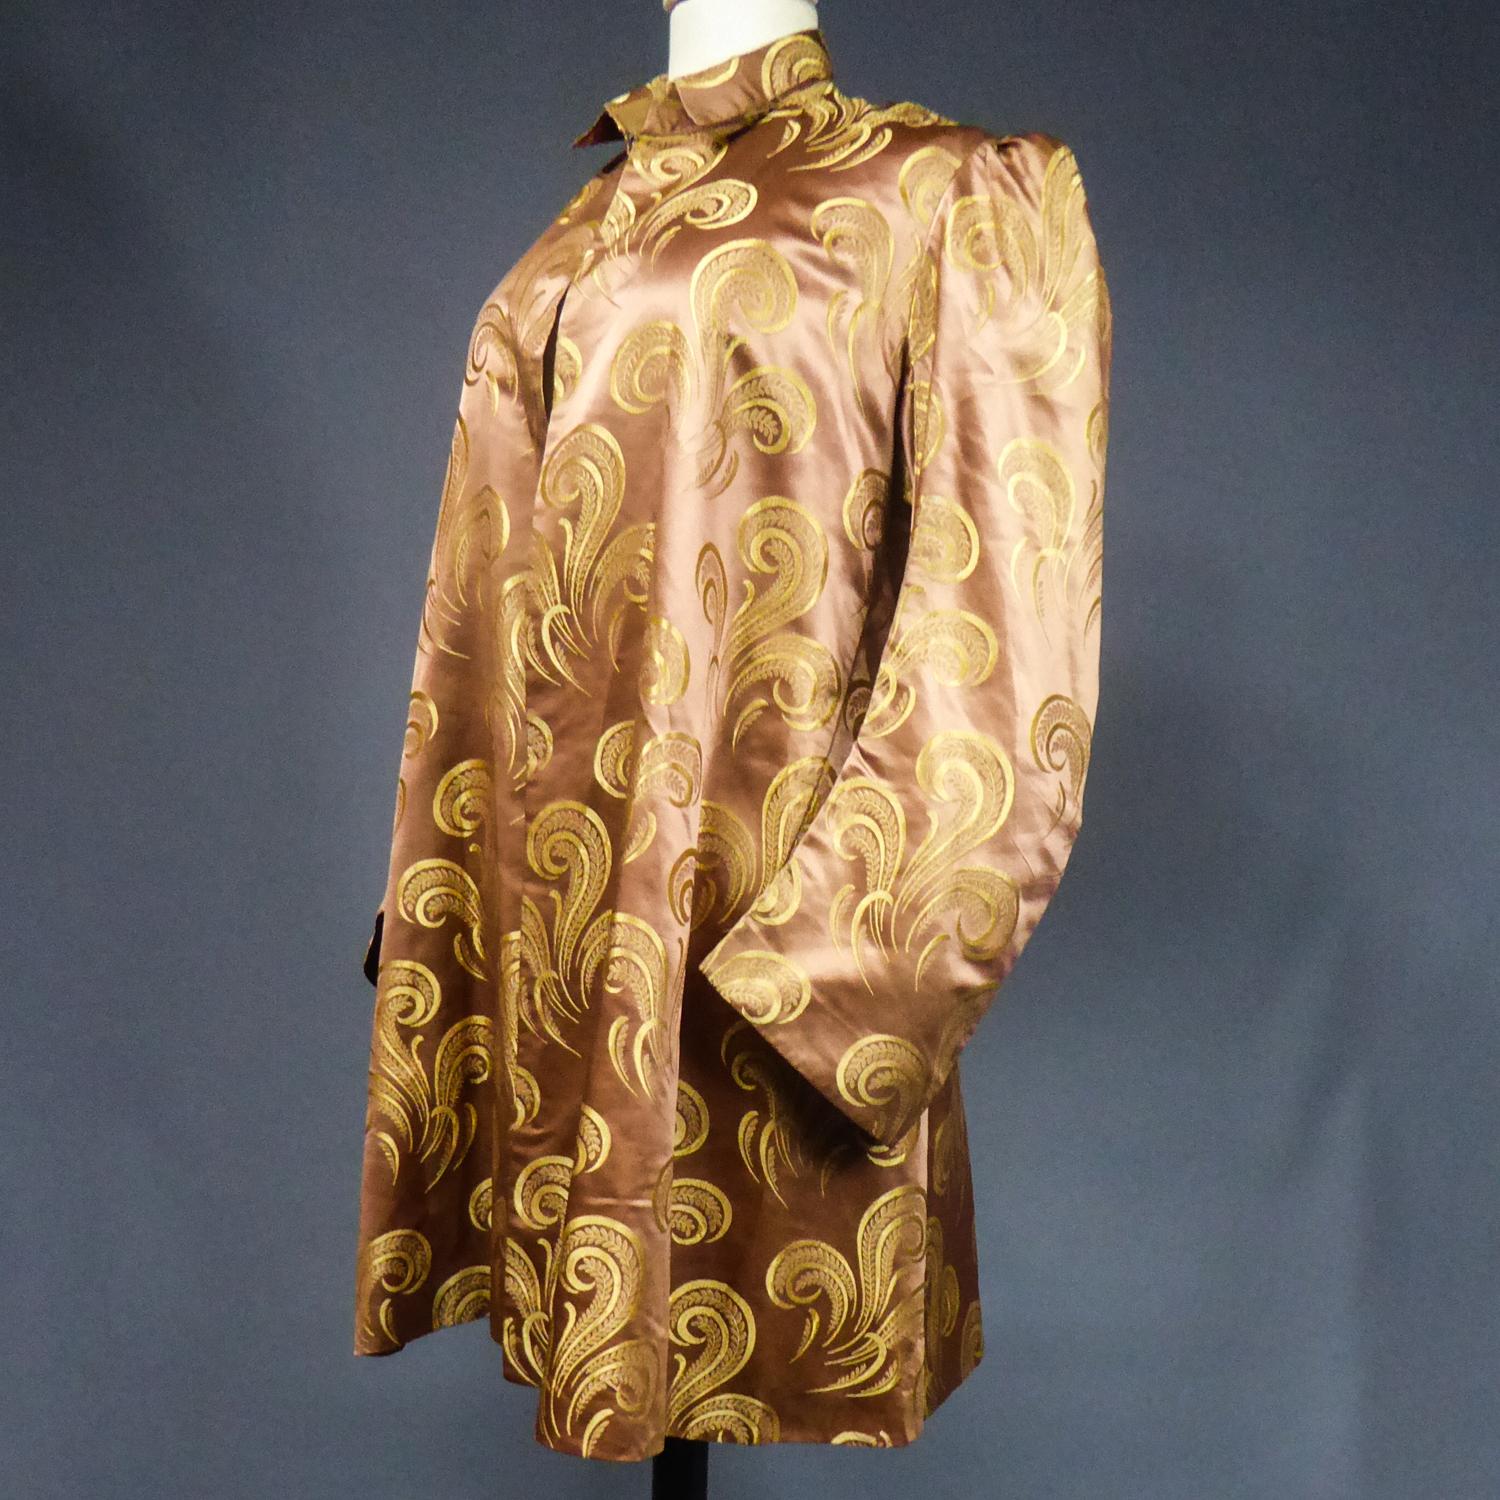 Circa 1930/1950
France

Superbe veste de soirée ou de fête inspirée du style Amazone, en satin de soie marron avec des motifs stylisés dorés en volutes, plumes et panaches. Il s'agit d'une réutilisation d'une robe plus ancienne car le satin de soie